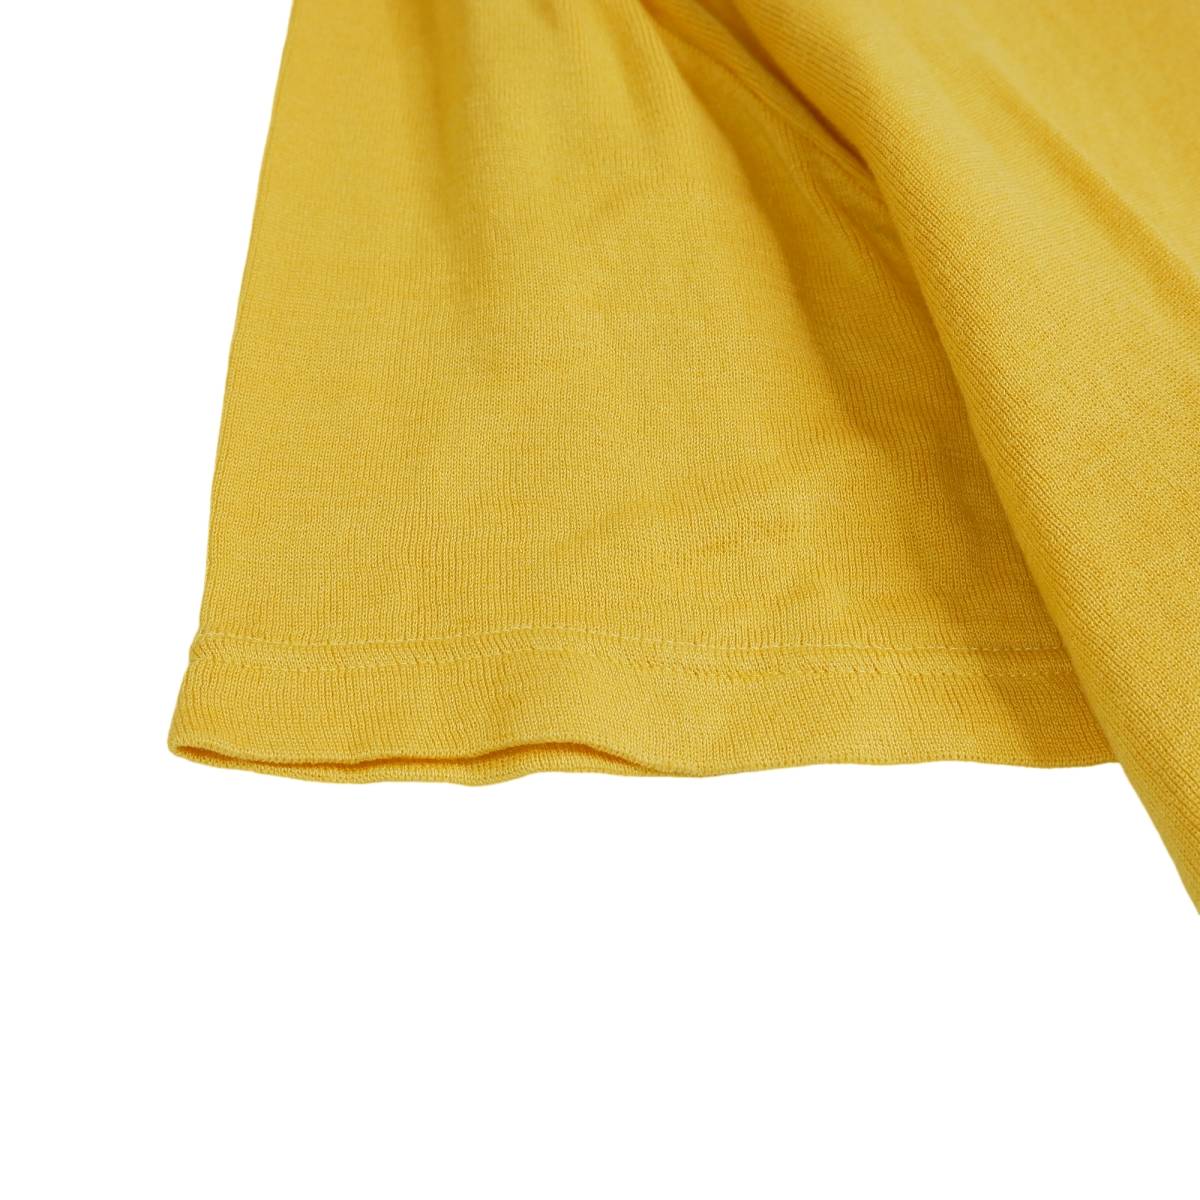 ◆美品 フランス製◆ Letroyes ルトロワ 半袖 コットン ニット カットソー セーター 黄色 レディース 5 ◆送料無料◆ 0674A0